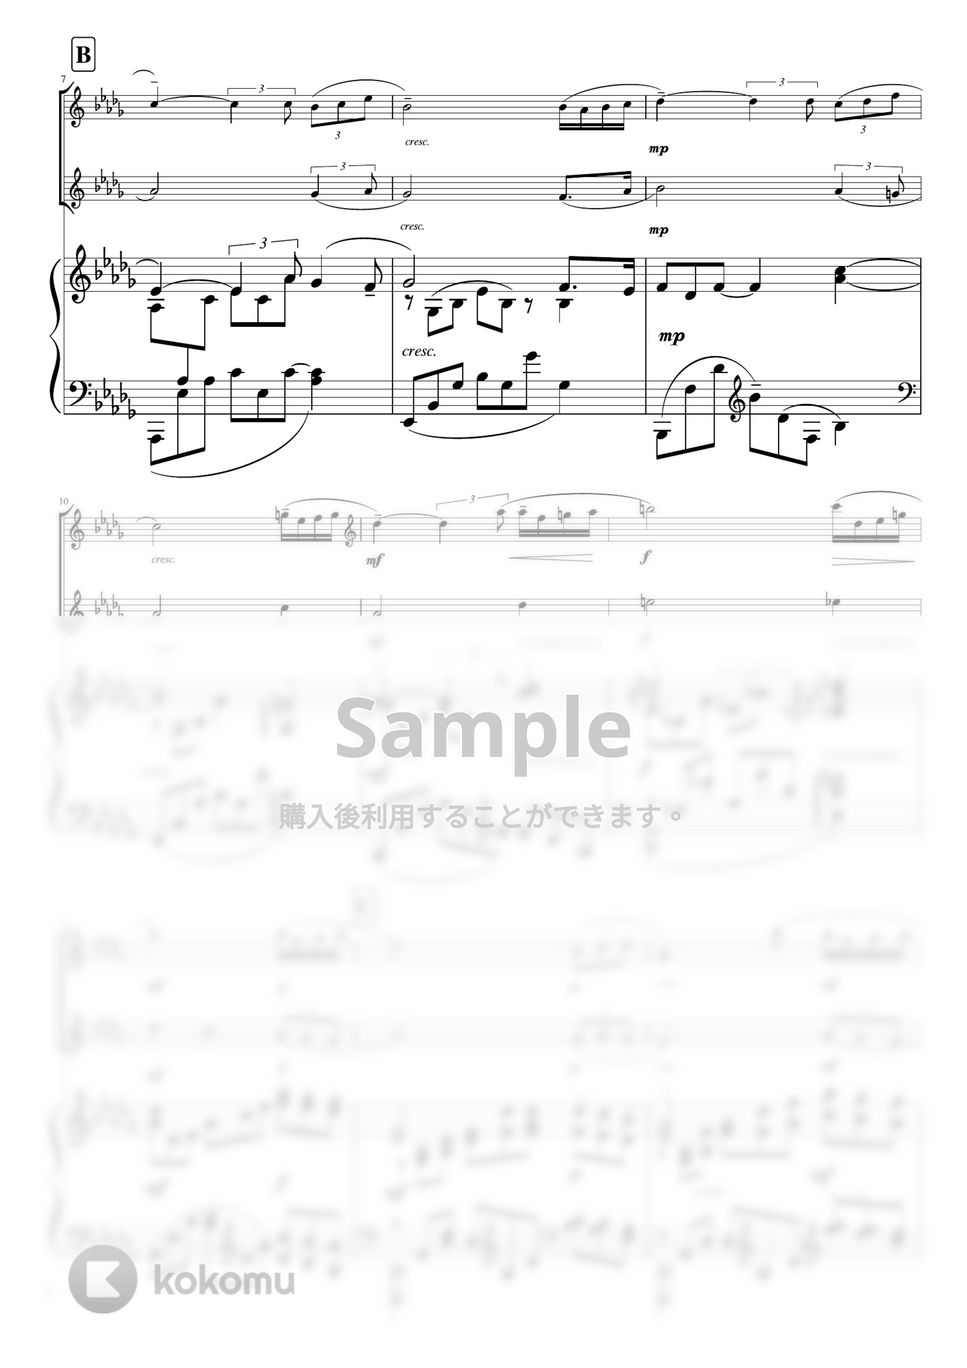 ラフマニノフ - パガニーニの主題による狂詩曲より第18変奏 (D♭・ピアノトリオ中〜上級(フルート&バイオリン)) by pfkaori